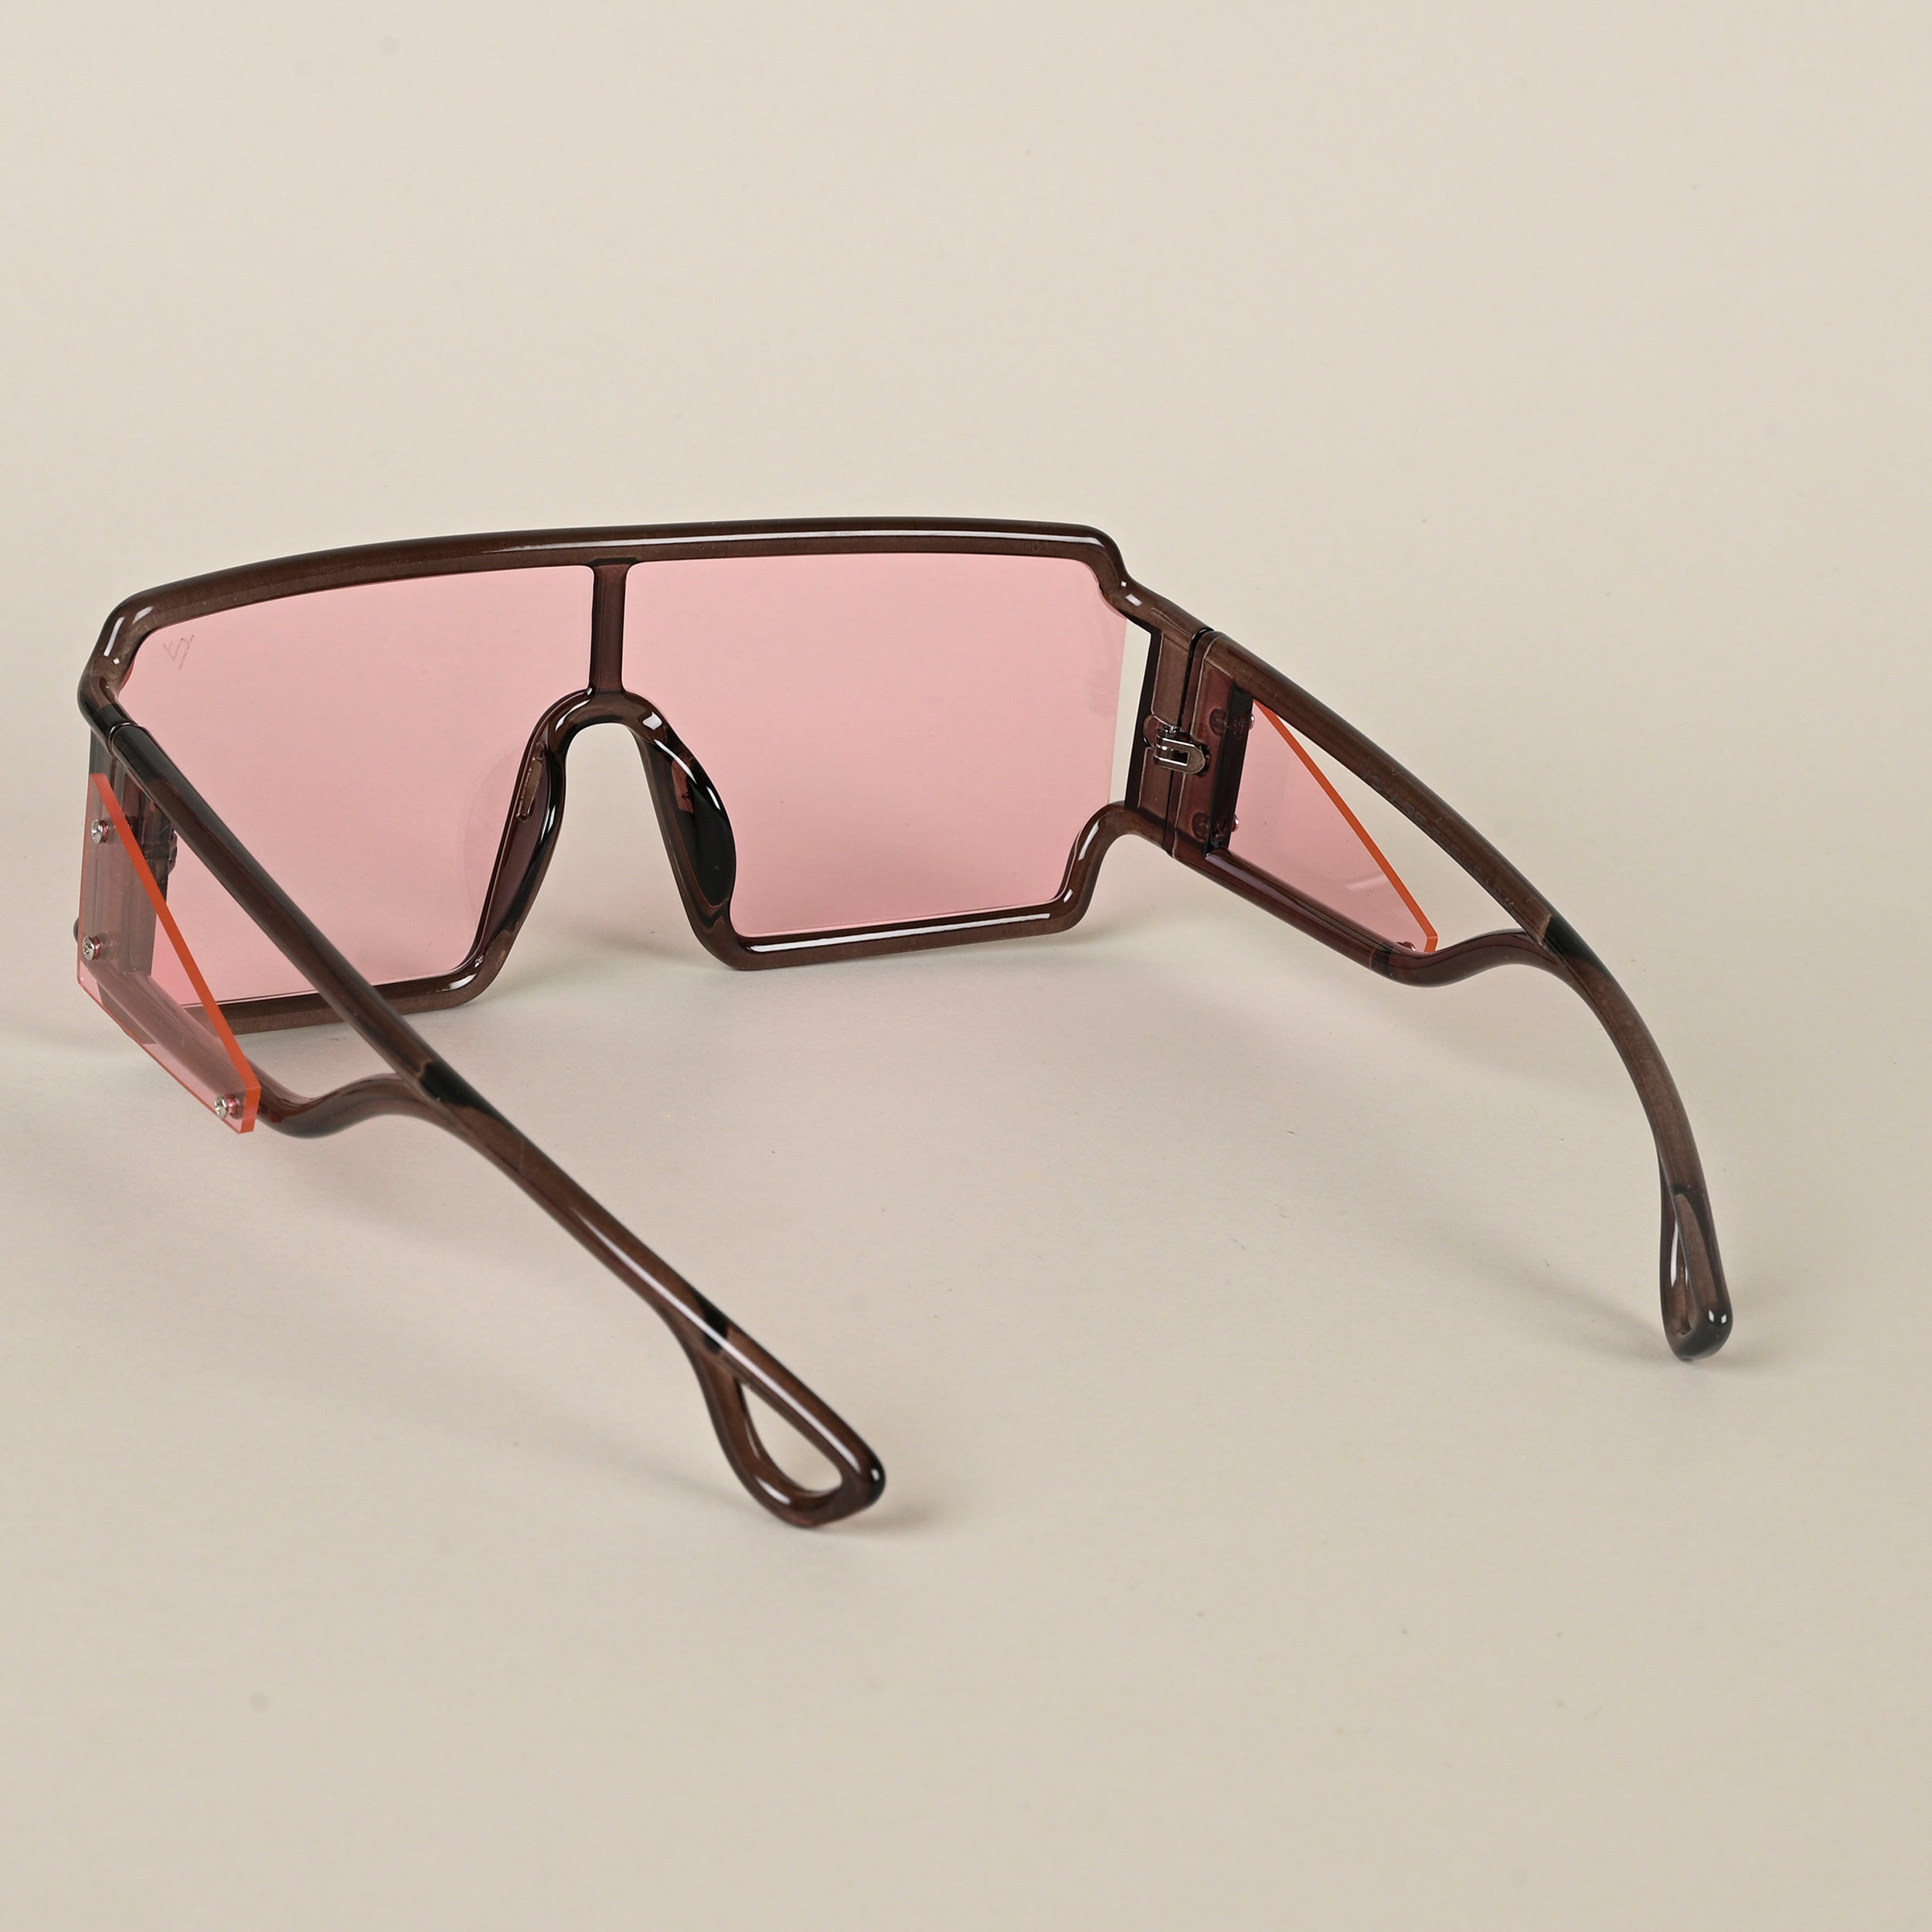 Voyage Hazel Wayfarer Sunglasses for Men & Women - MG4560